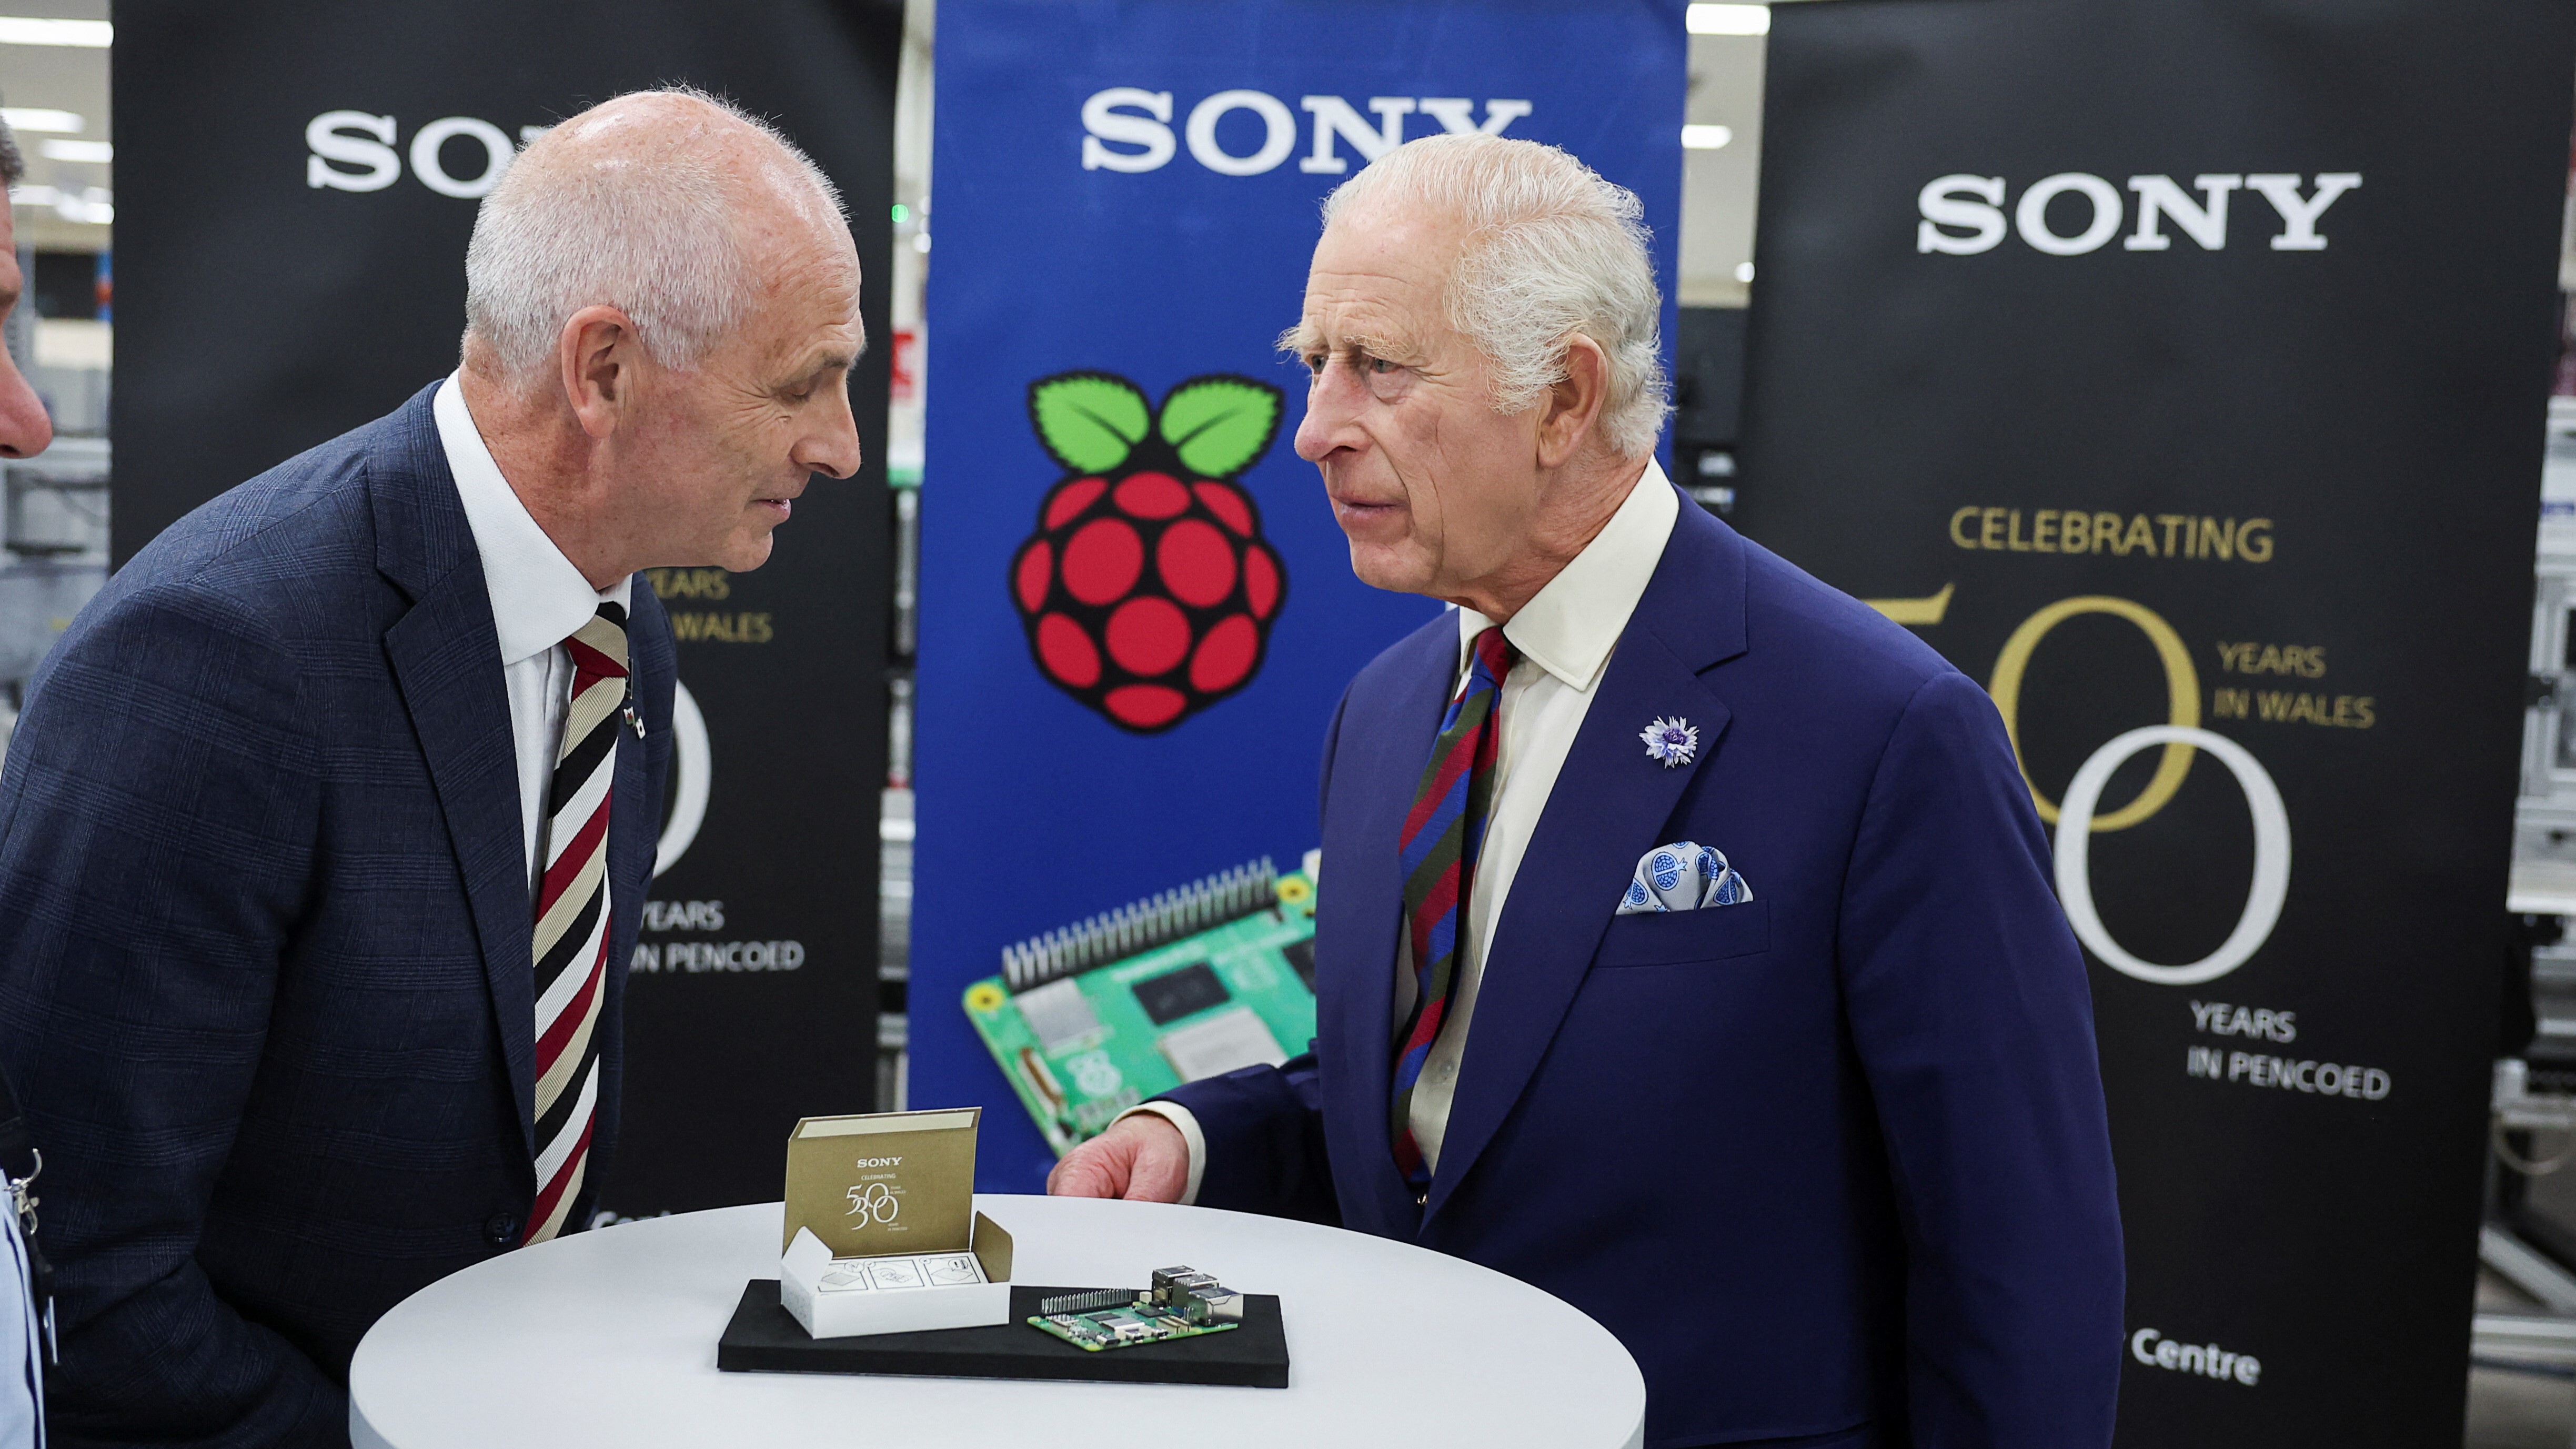 Kral III. Charles, Raspberry Pi Baş Ticari Sorumlusu Mike Buffham ile görüşüyor